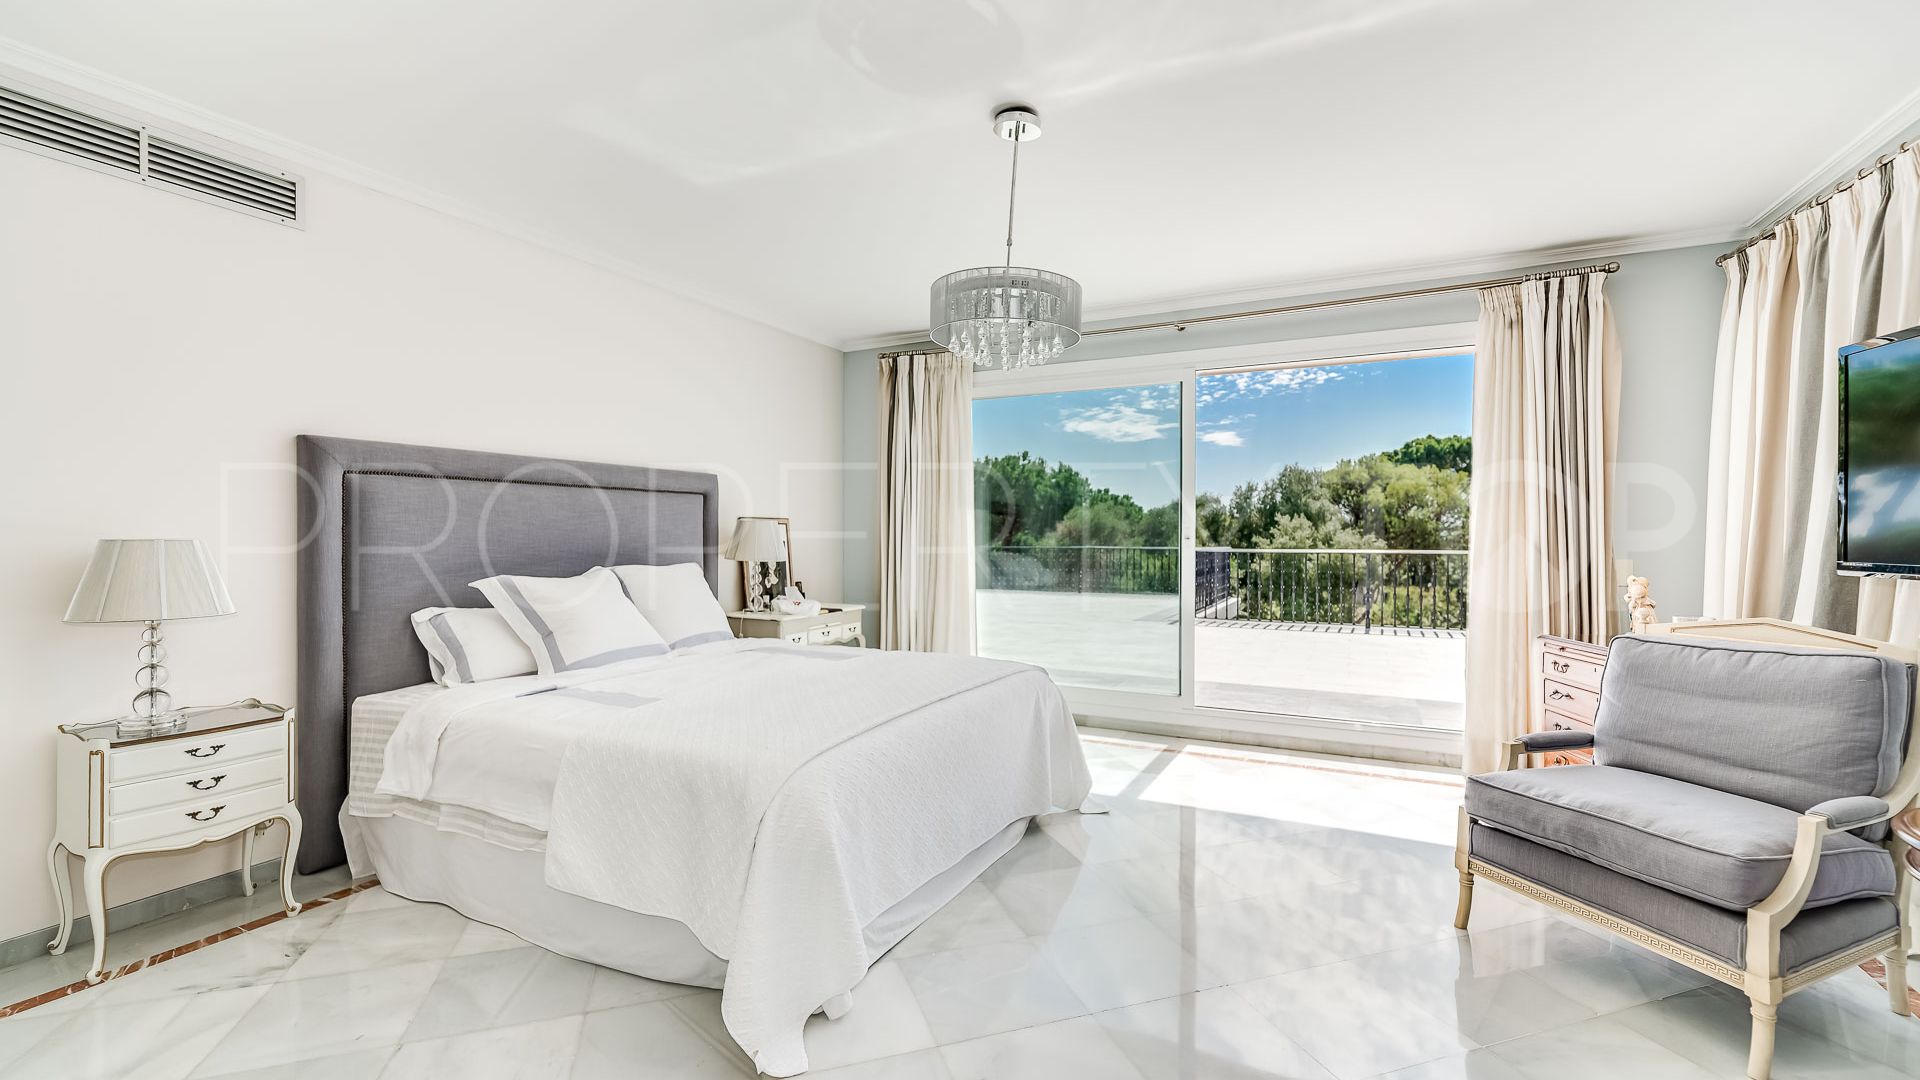 7 bedrooms villa in Rio Real for sale